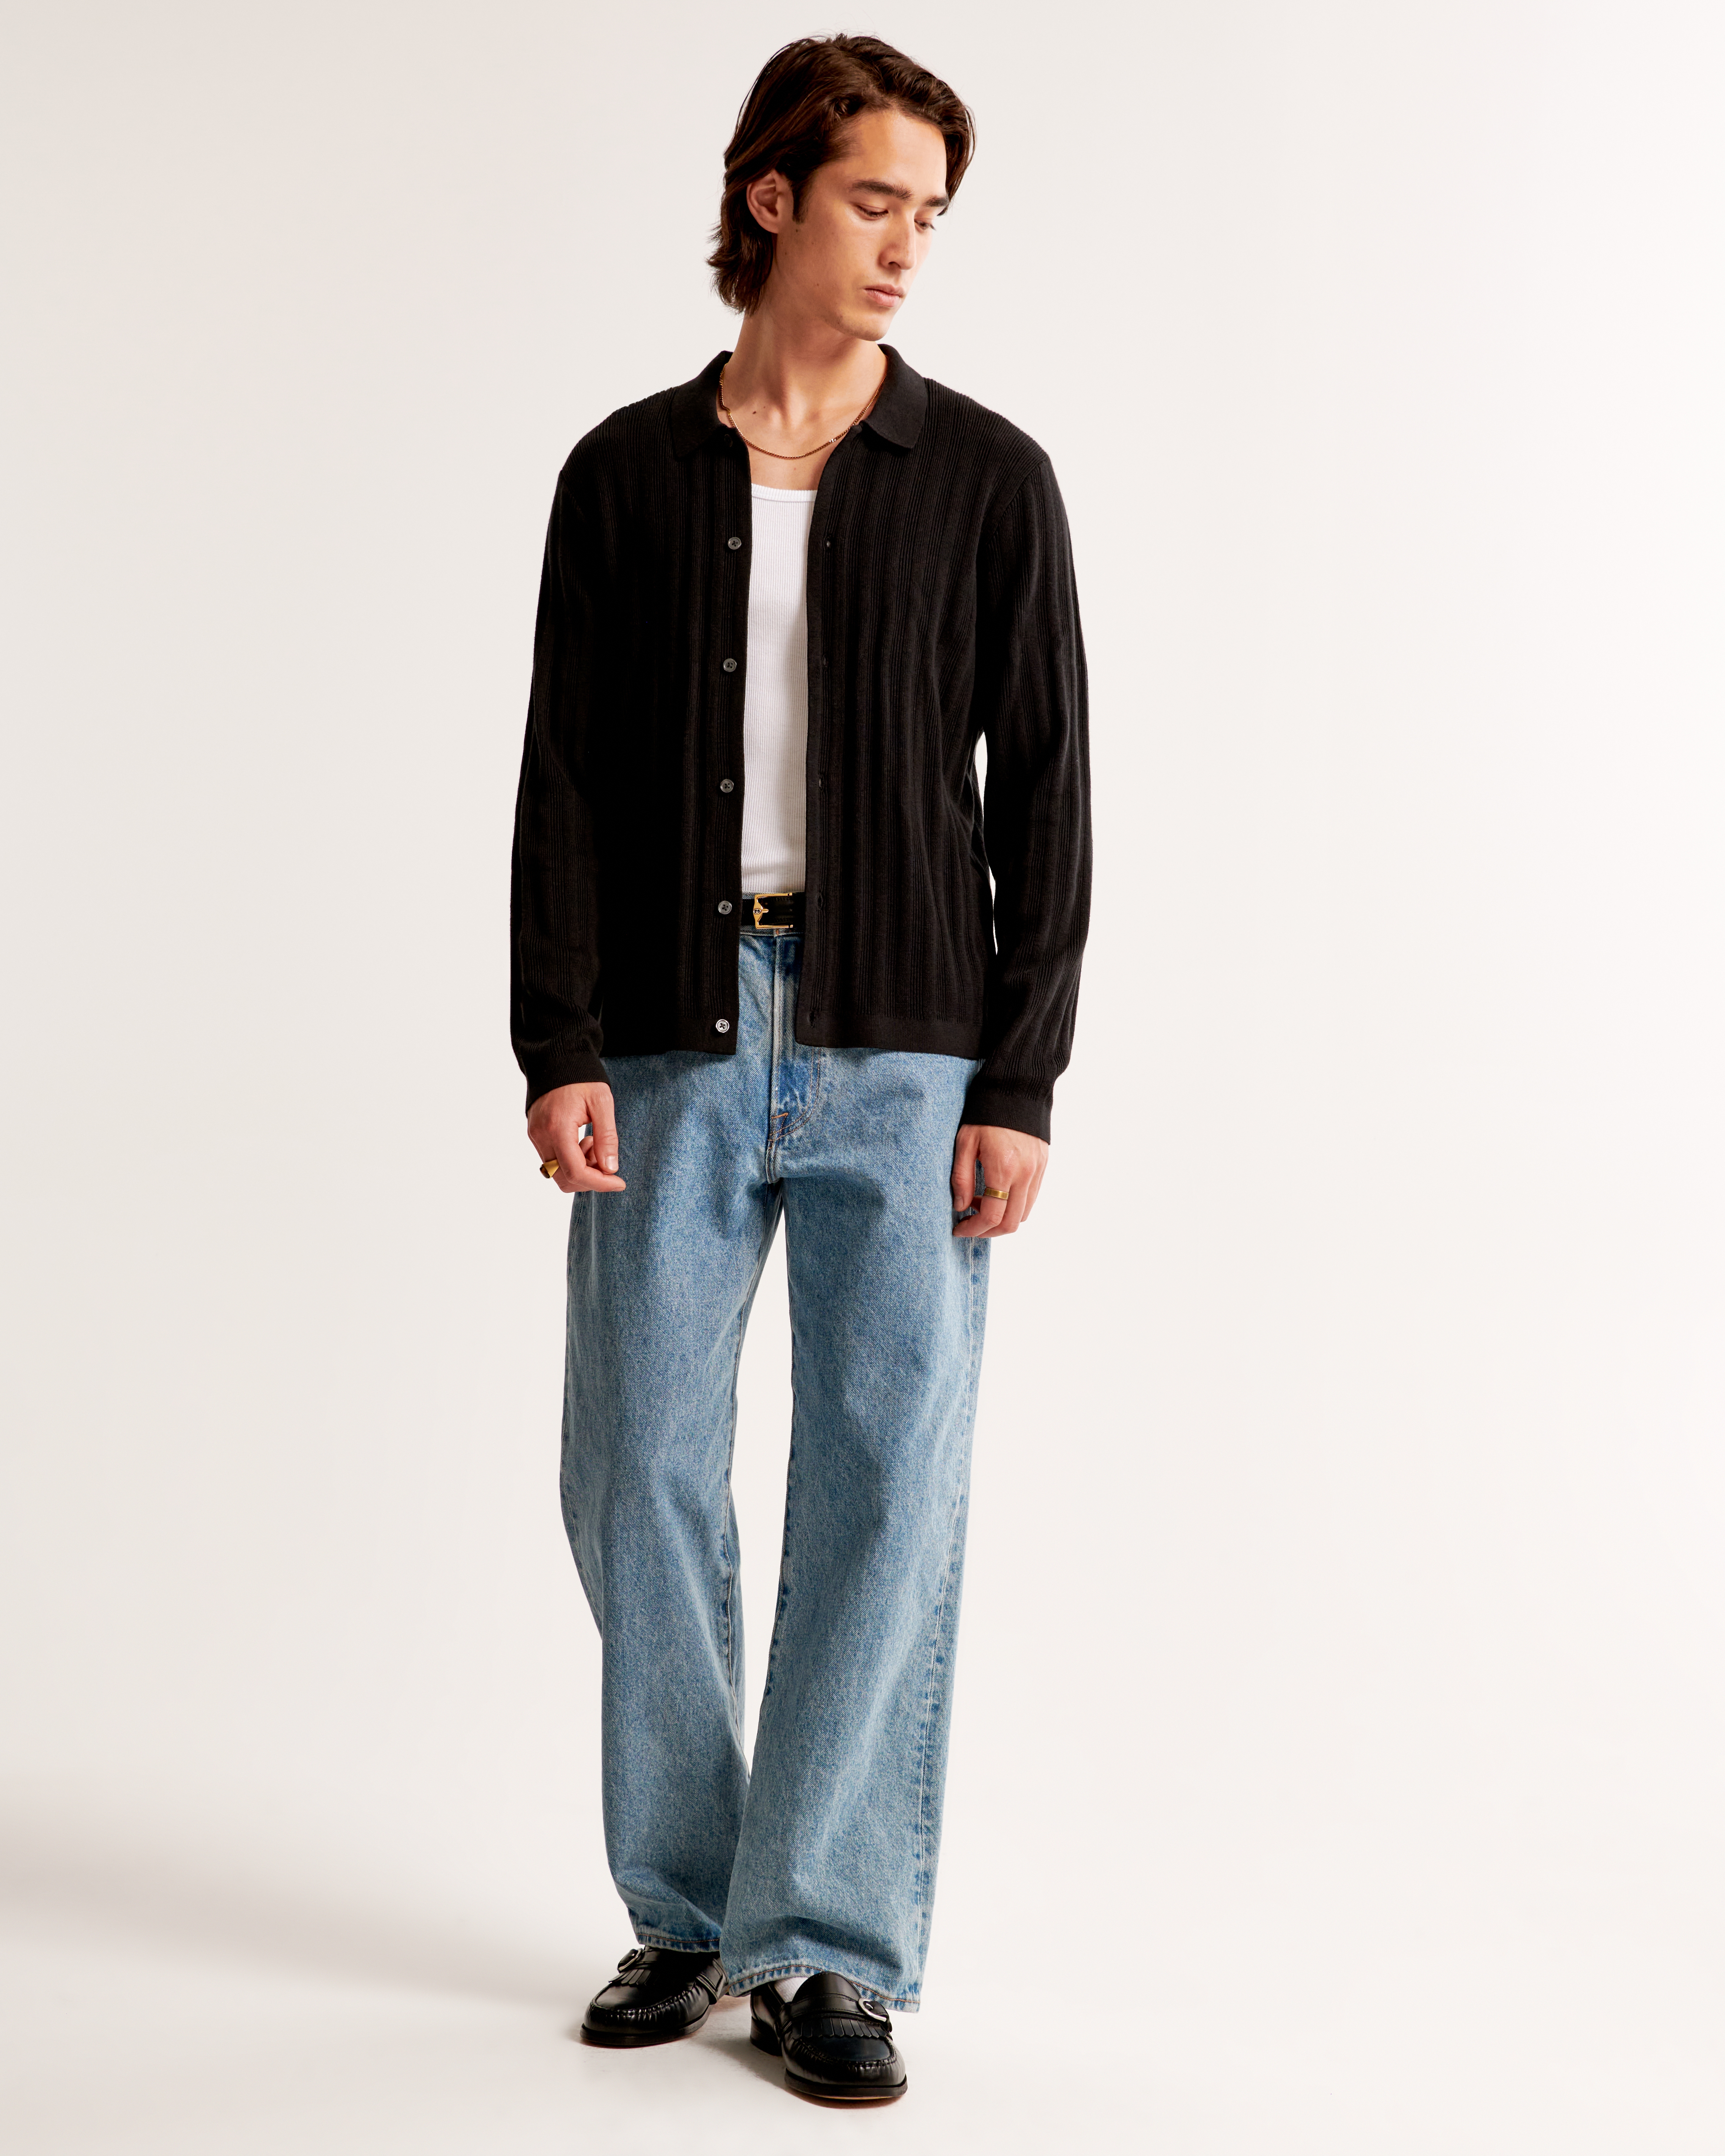 Men's Pima Cotton Long-Sleeve Button-Through Sweater Polo | Men's